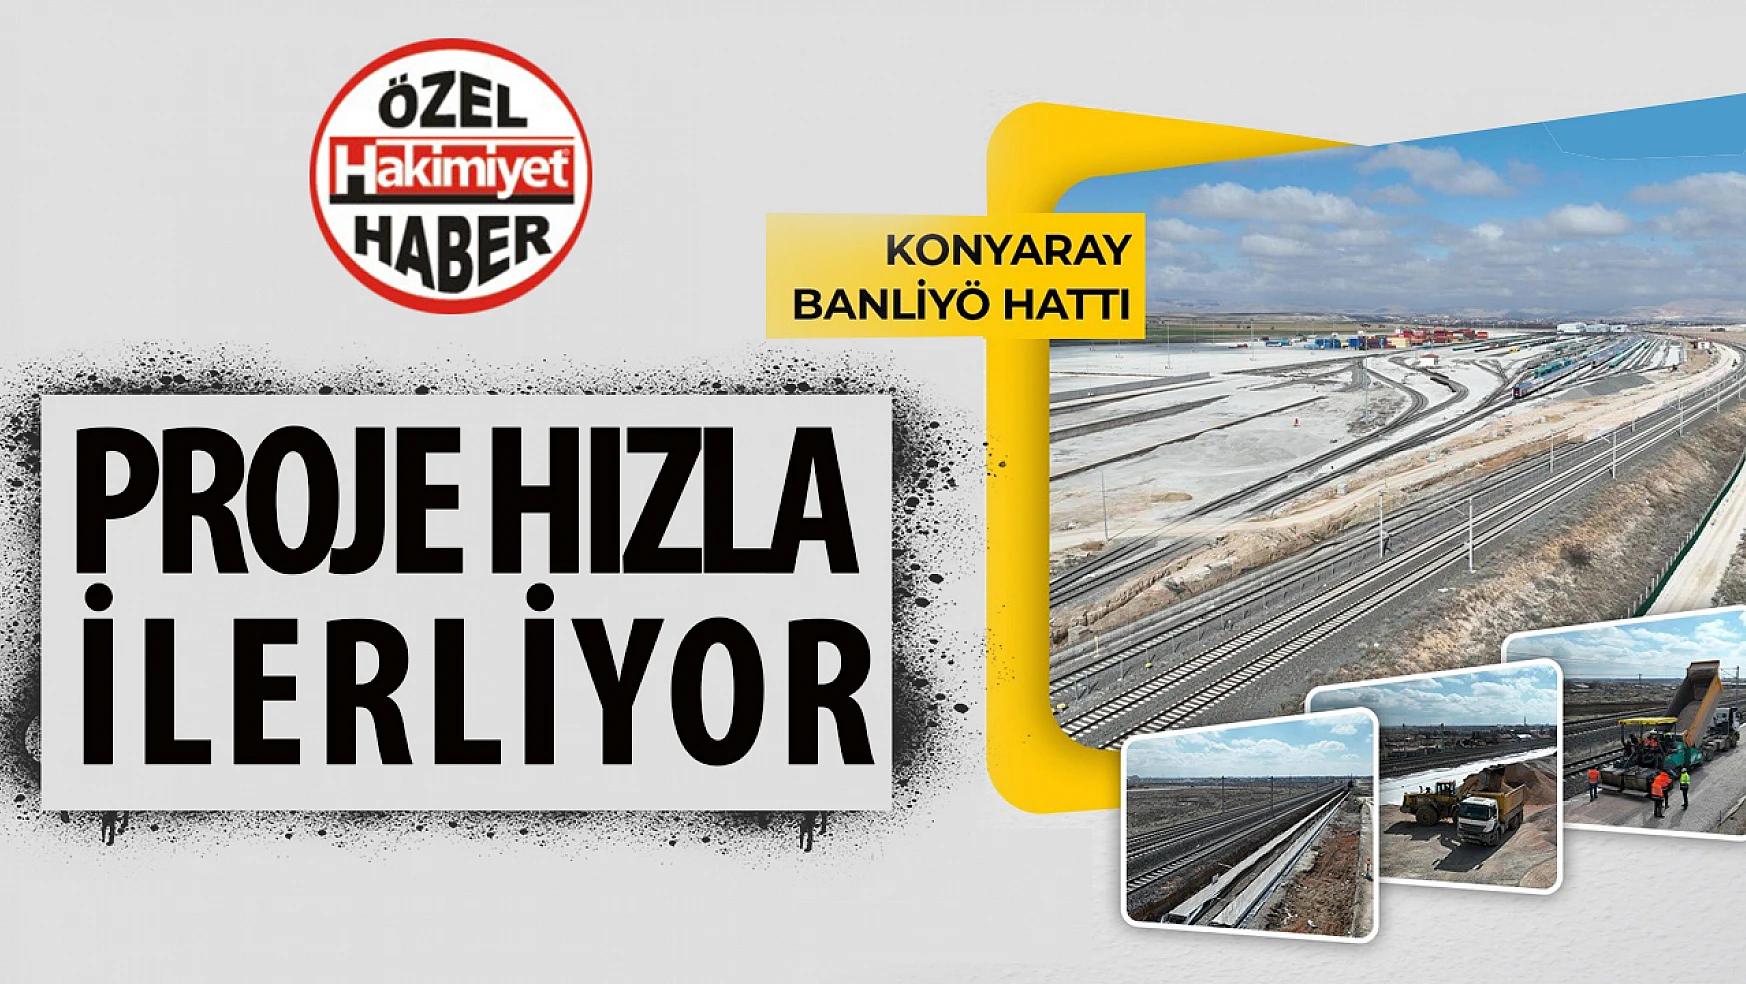 Konya Büyükşehir Belediyesi, Banliyö Hattı Projesi'nde Hızla İlerliyor